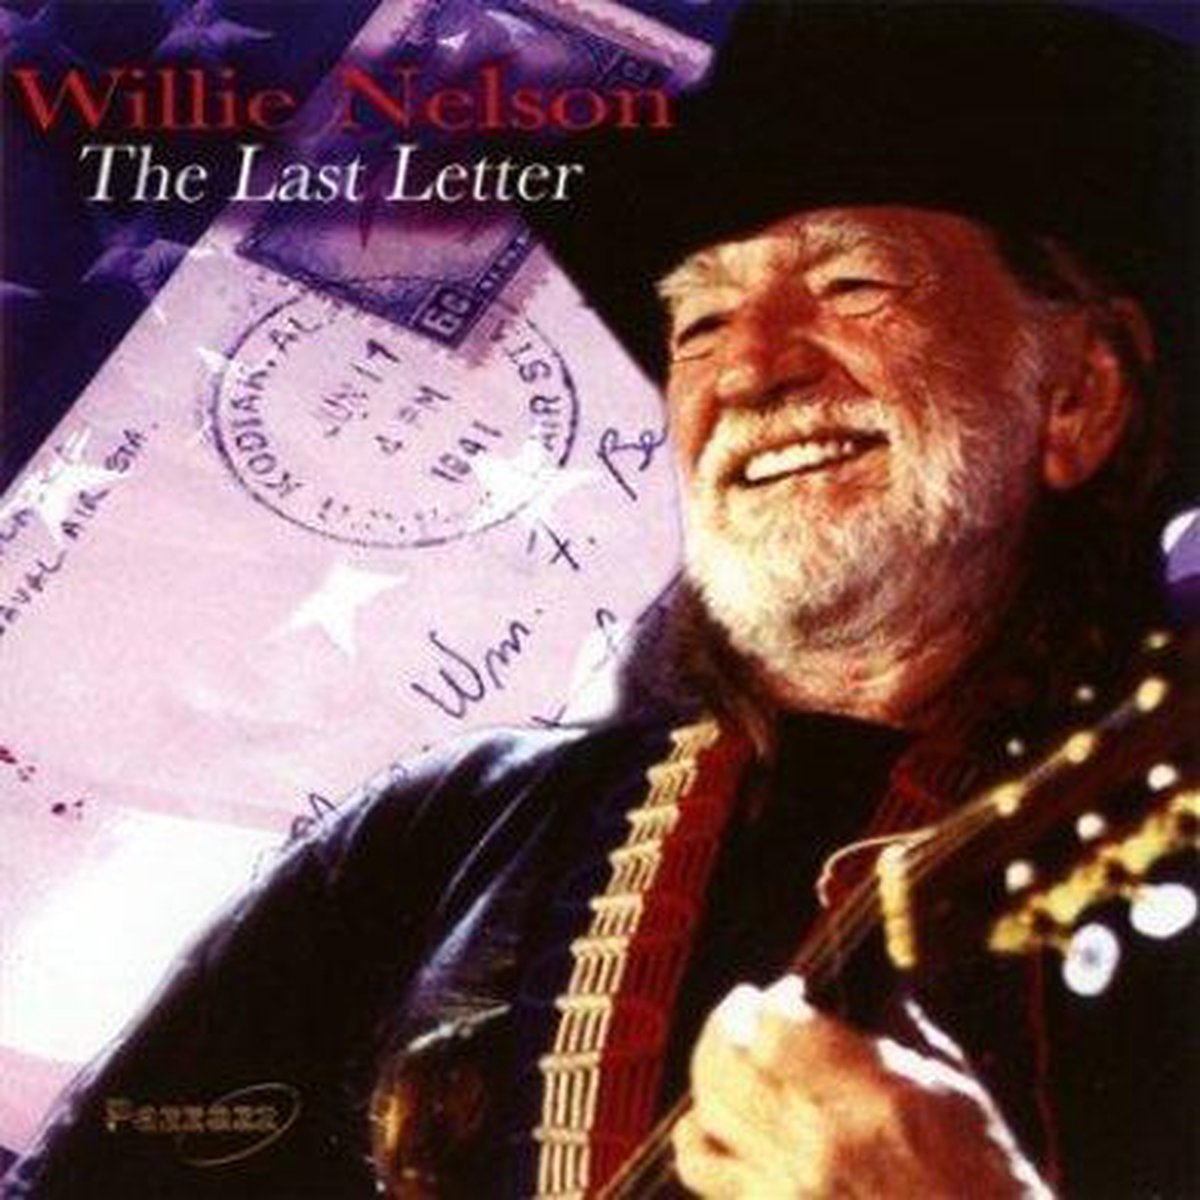 Willie Nelson - The Last Letter (CD) - Willie Nelson